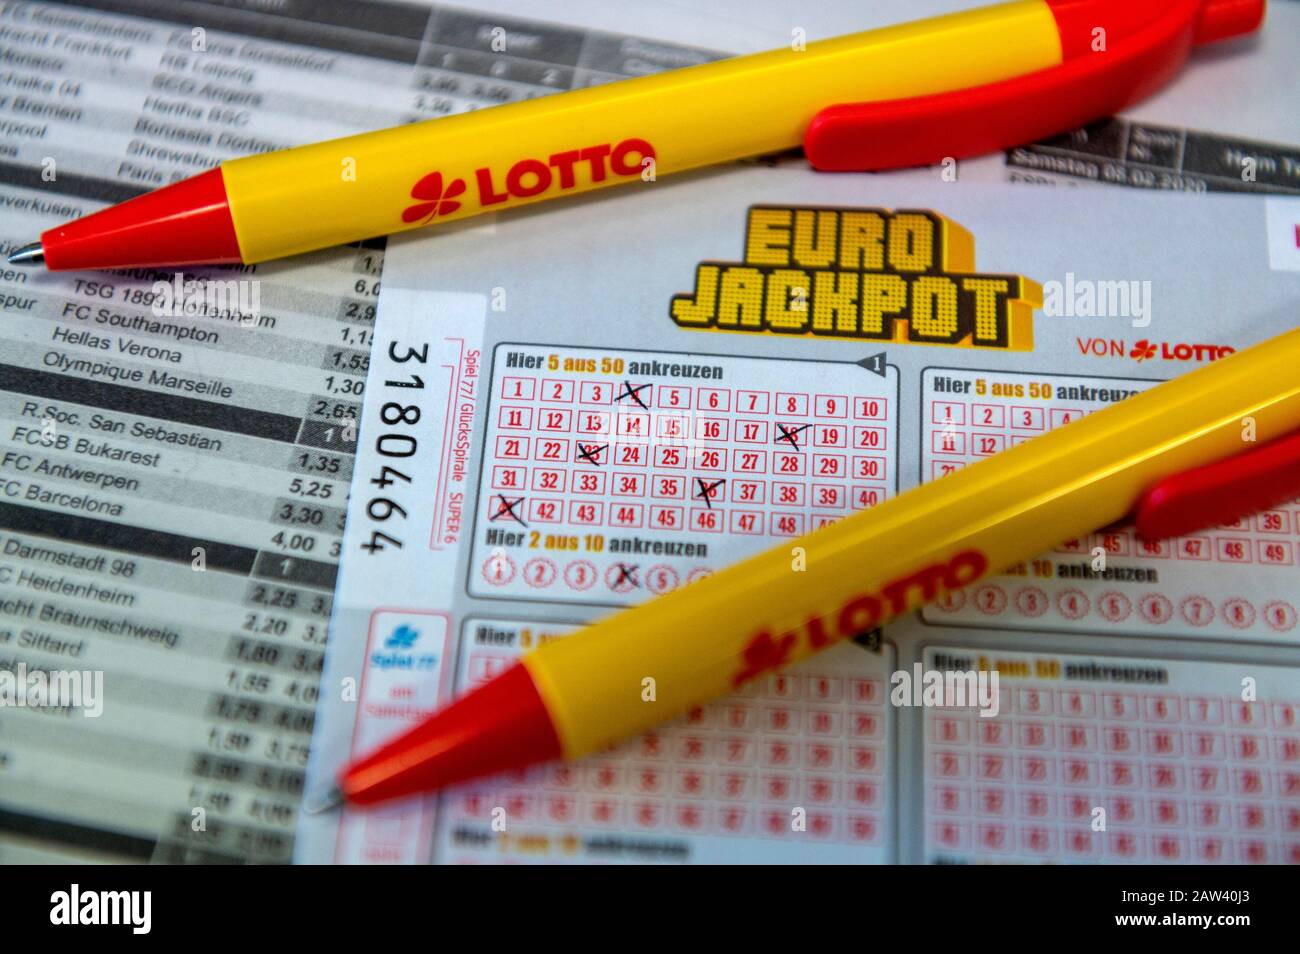 Eurojackpot Stockfotos und -bilder Kaufen - Alamy